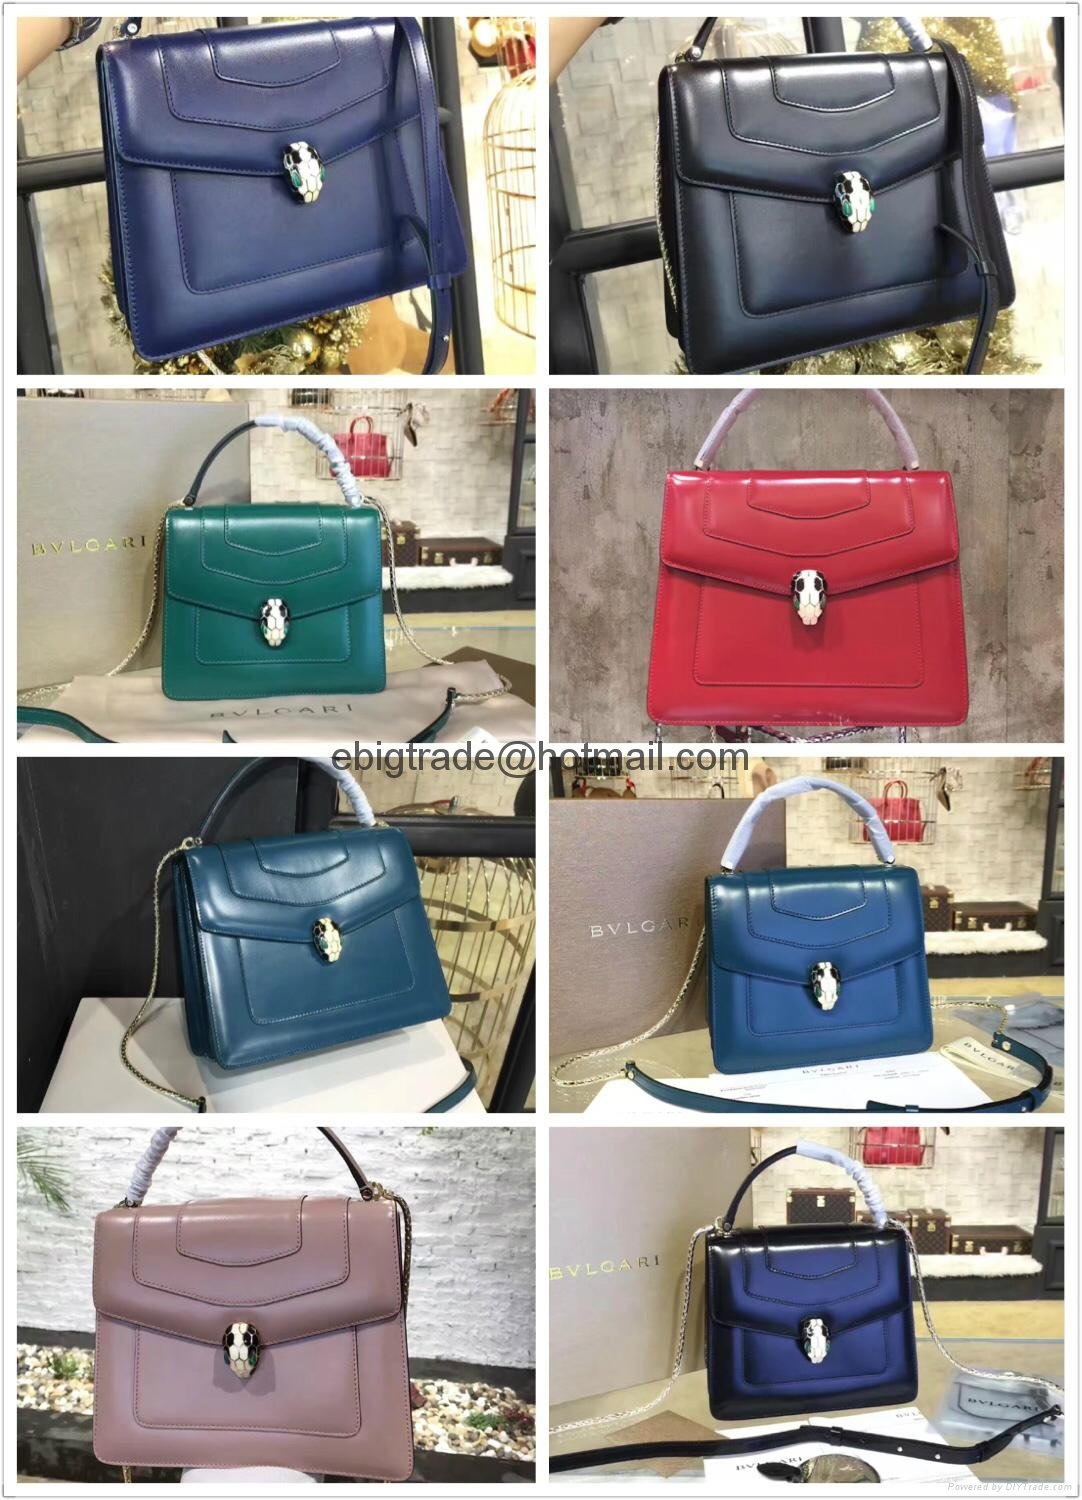 bvlgari handbags malaysia price